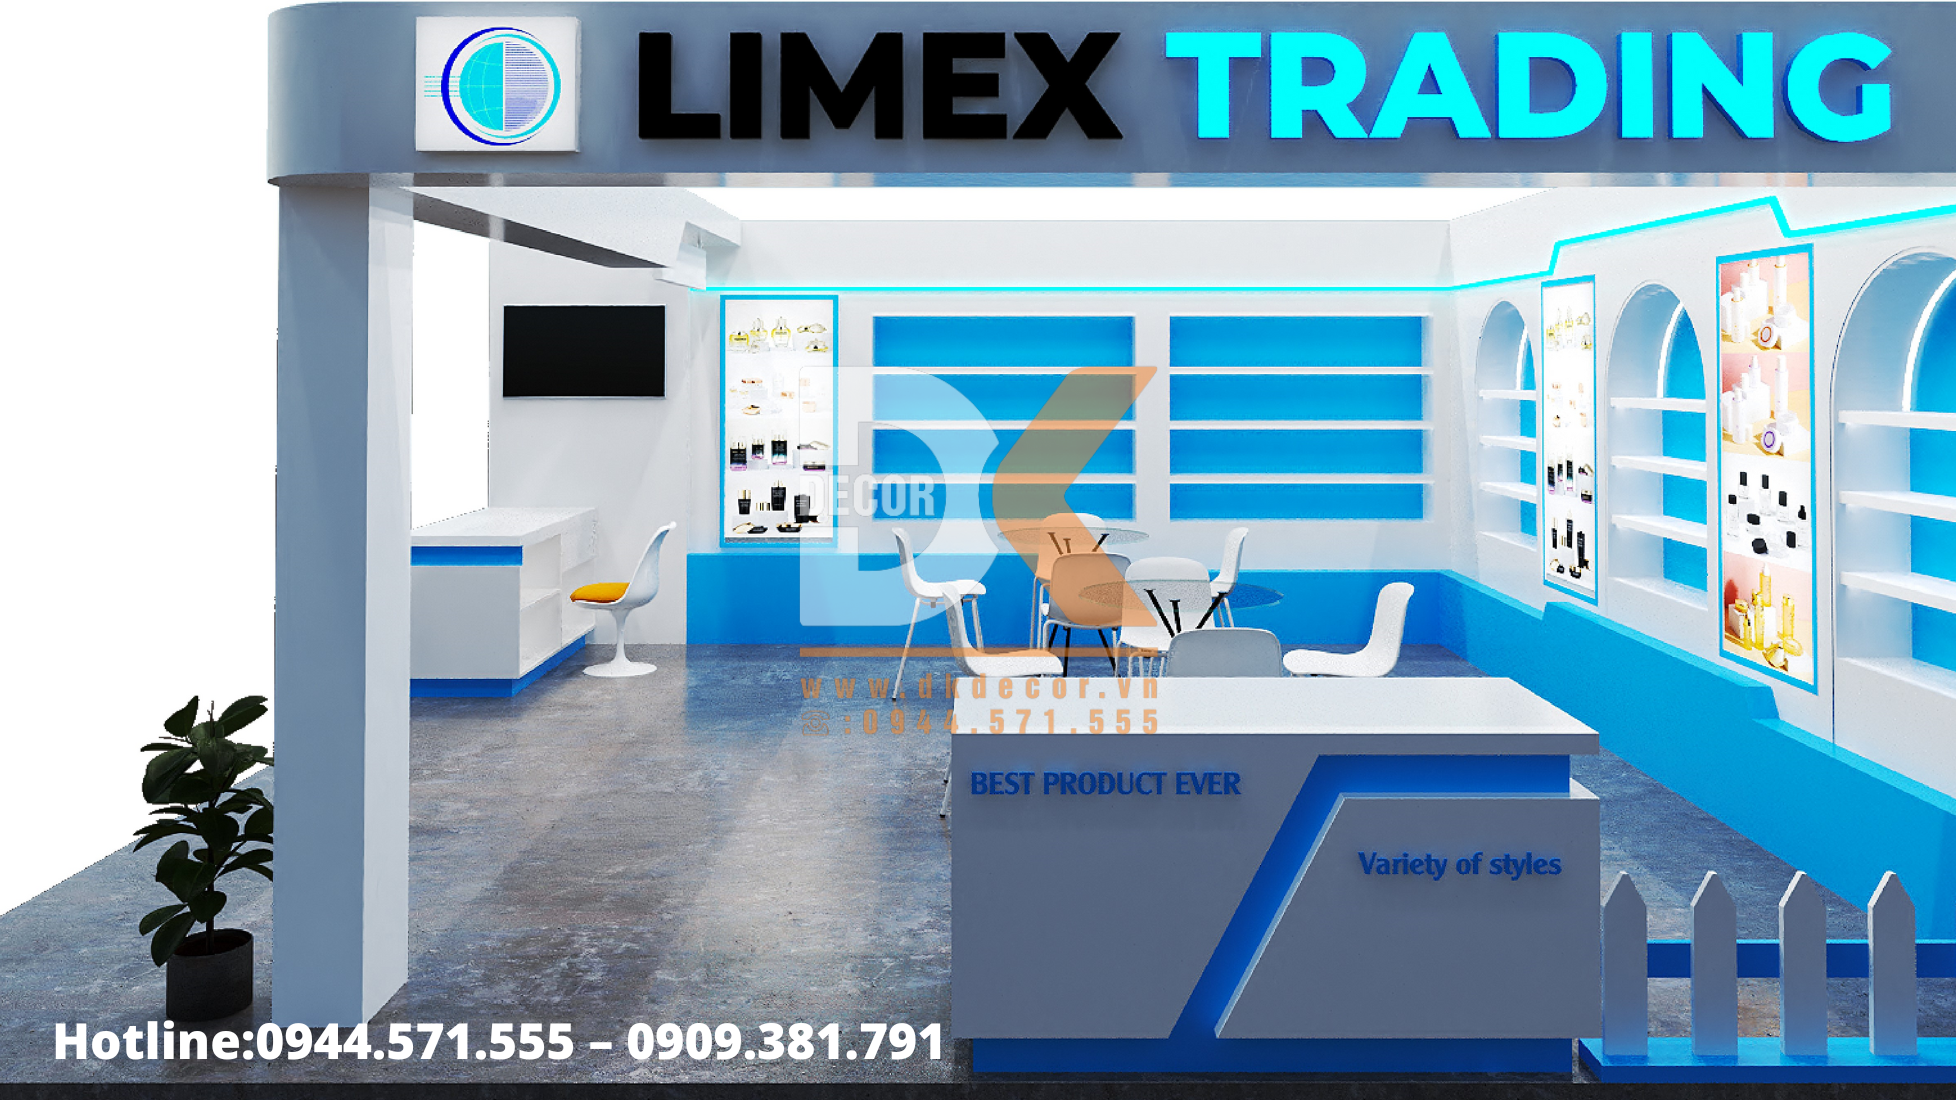 thi công triển lãm limex trading